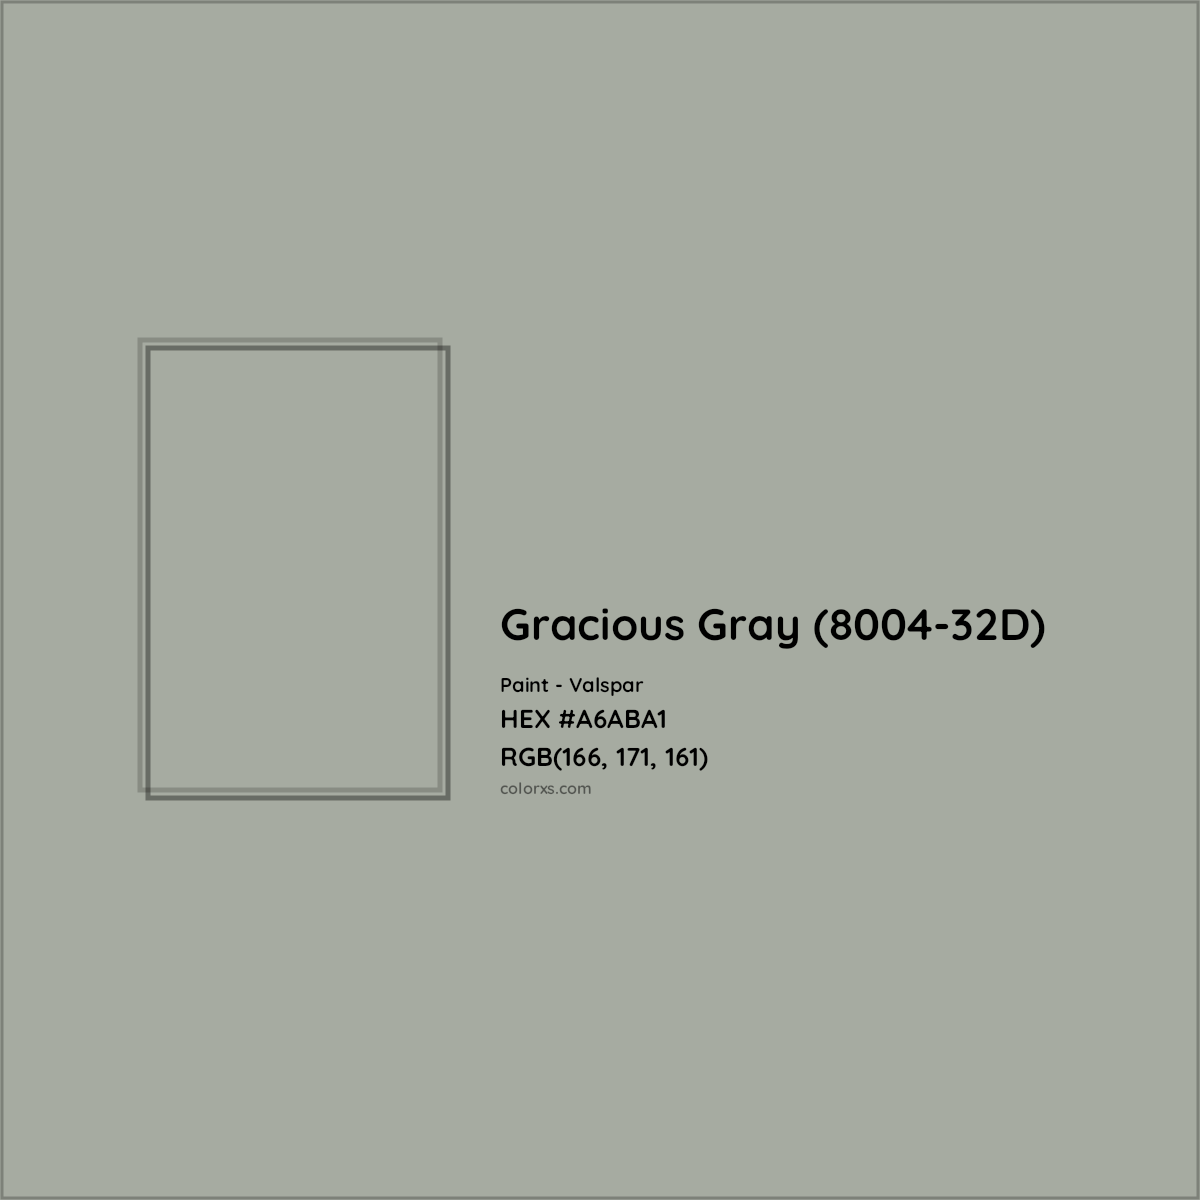 HEX #A6ABA1 Gracious Gray (8004-32D) Paint Valspar - Color Code